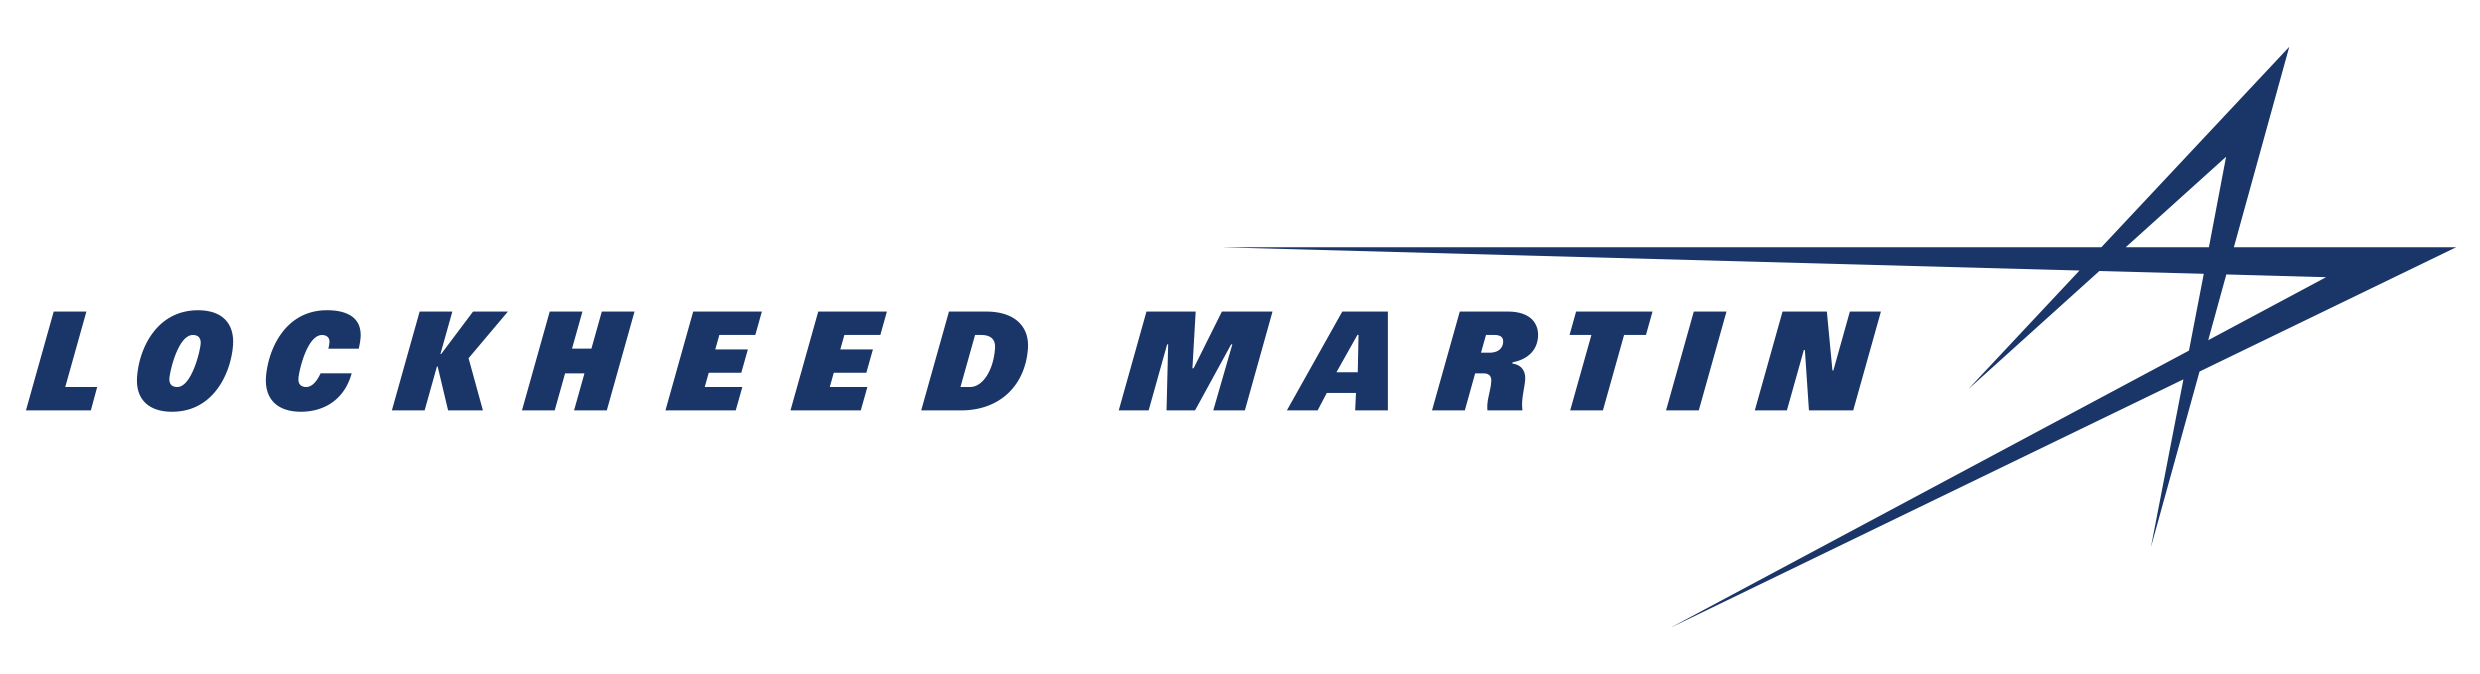 Lockheed Martin Space Logo - Lockheed Martin Corporation | Lockheed Martin